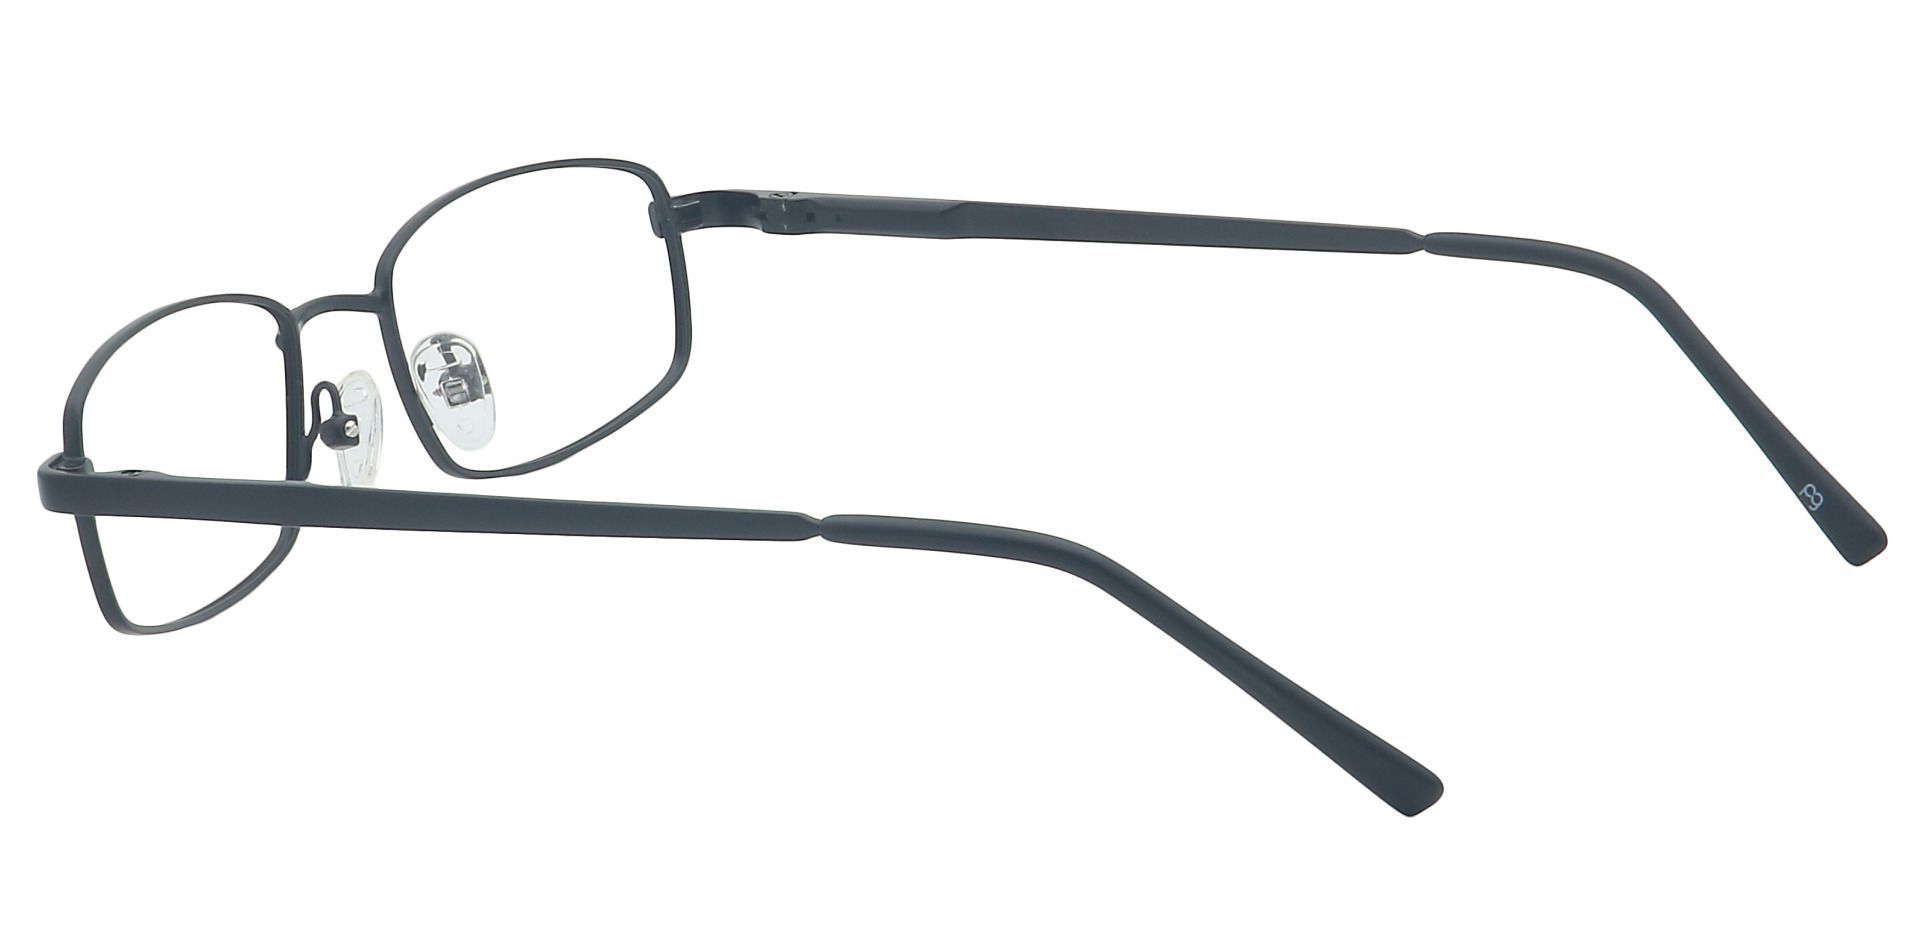 Sheldon Square Eyeglasses Frame - Black